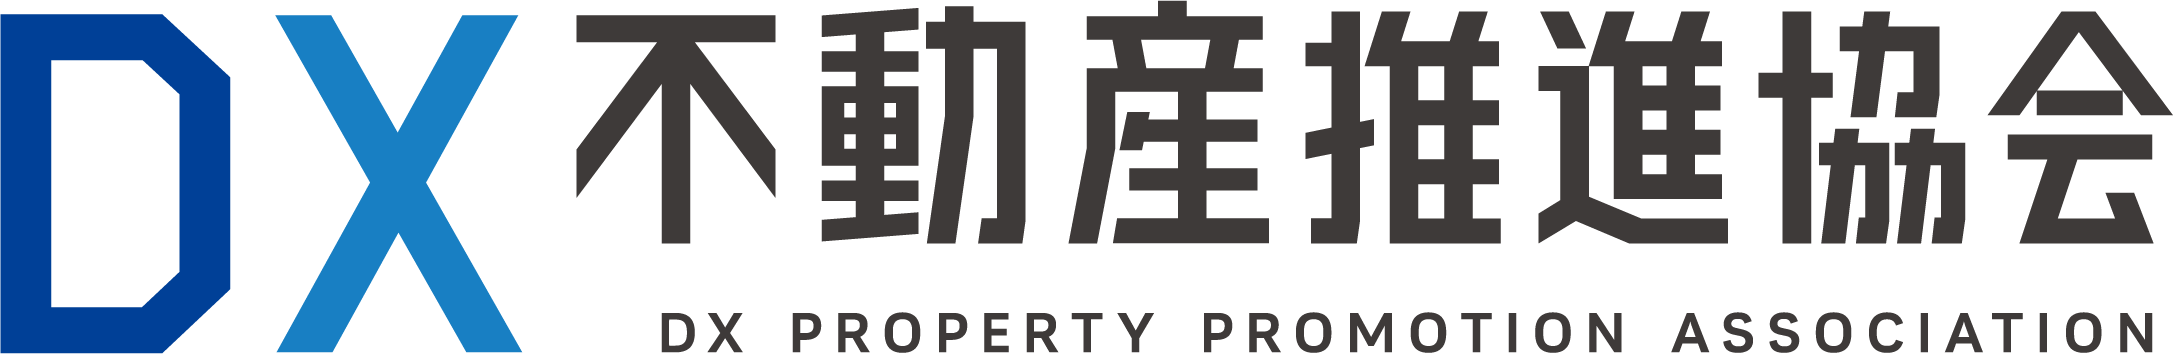 DX Property Promotion Association